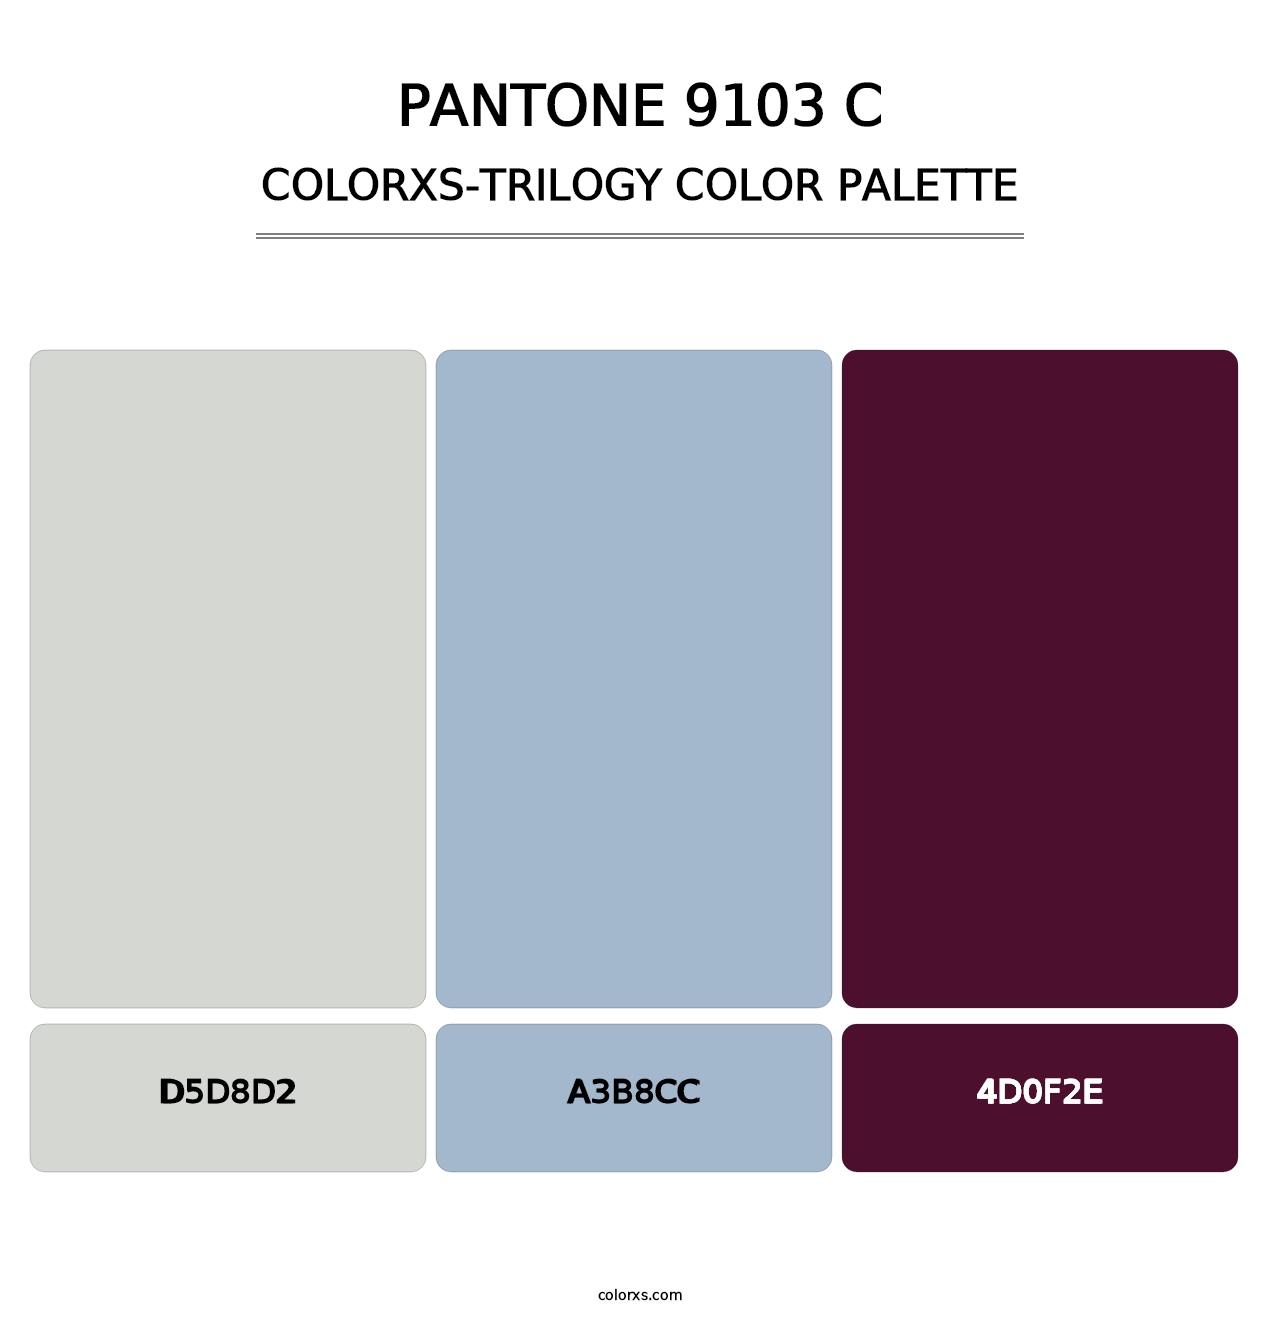 PANTONE 9103 C - Colorxs Trilogy Palette